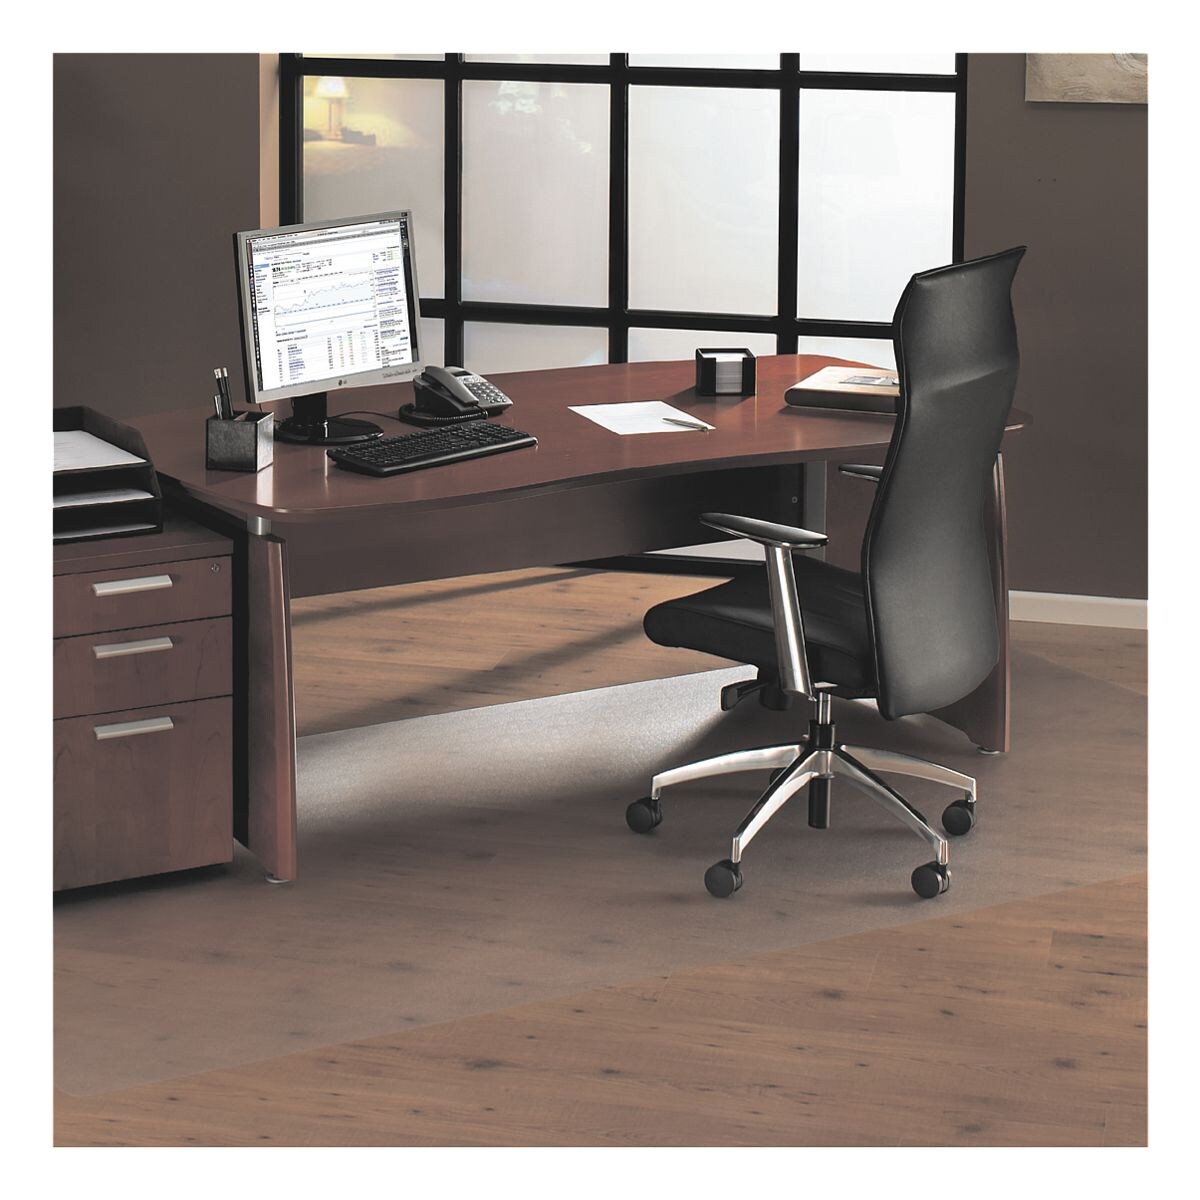 plaque protge-sol pour sols durs et moquettes, polycarbonate, rectangulaire 180 x 200 cm, OTTO Office Standard